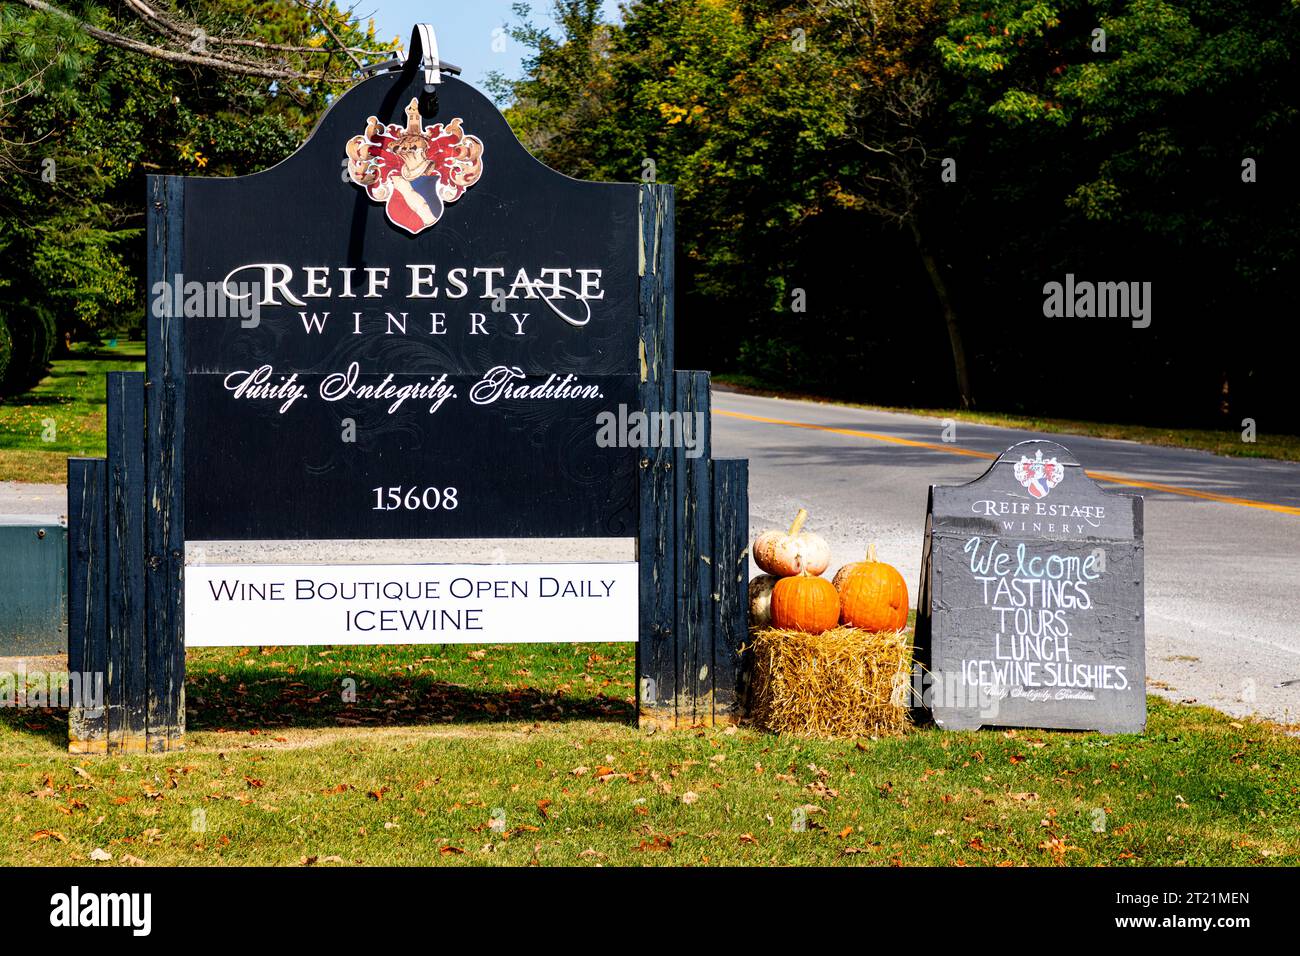 Reif Estate Winery sign in the Niagara Peninsula, Ontario Canada. Stock Photo